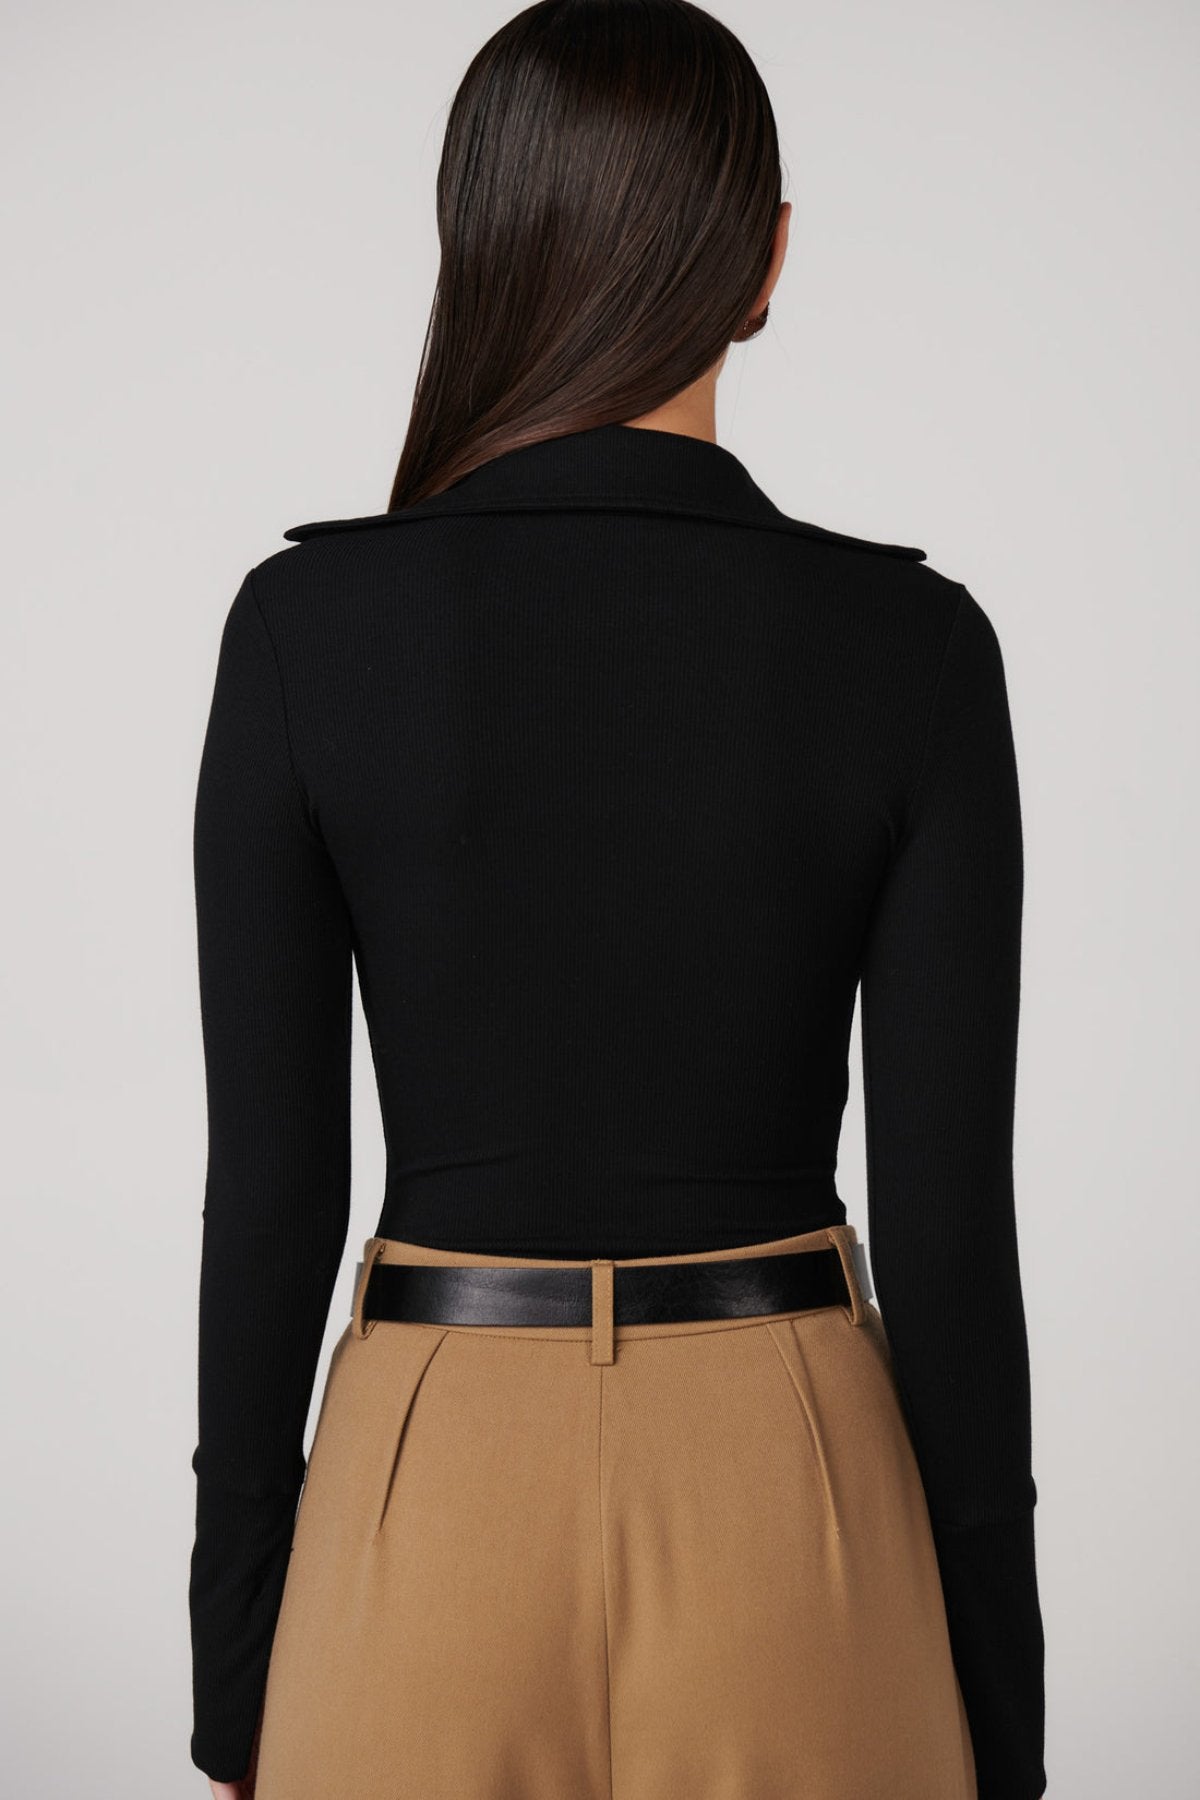 Celine Bodysuit - Black - Sare StoreBayse BrandBodysuit